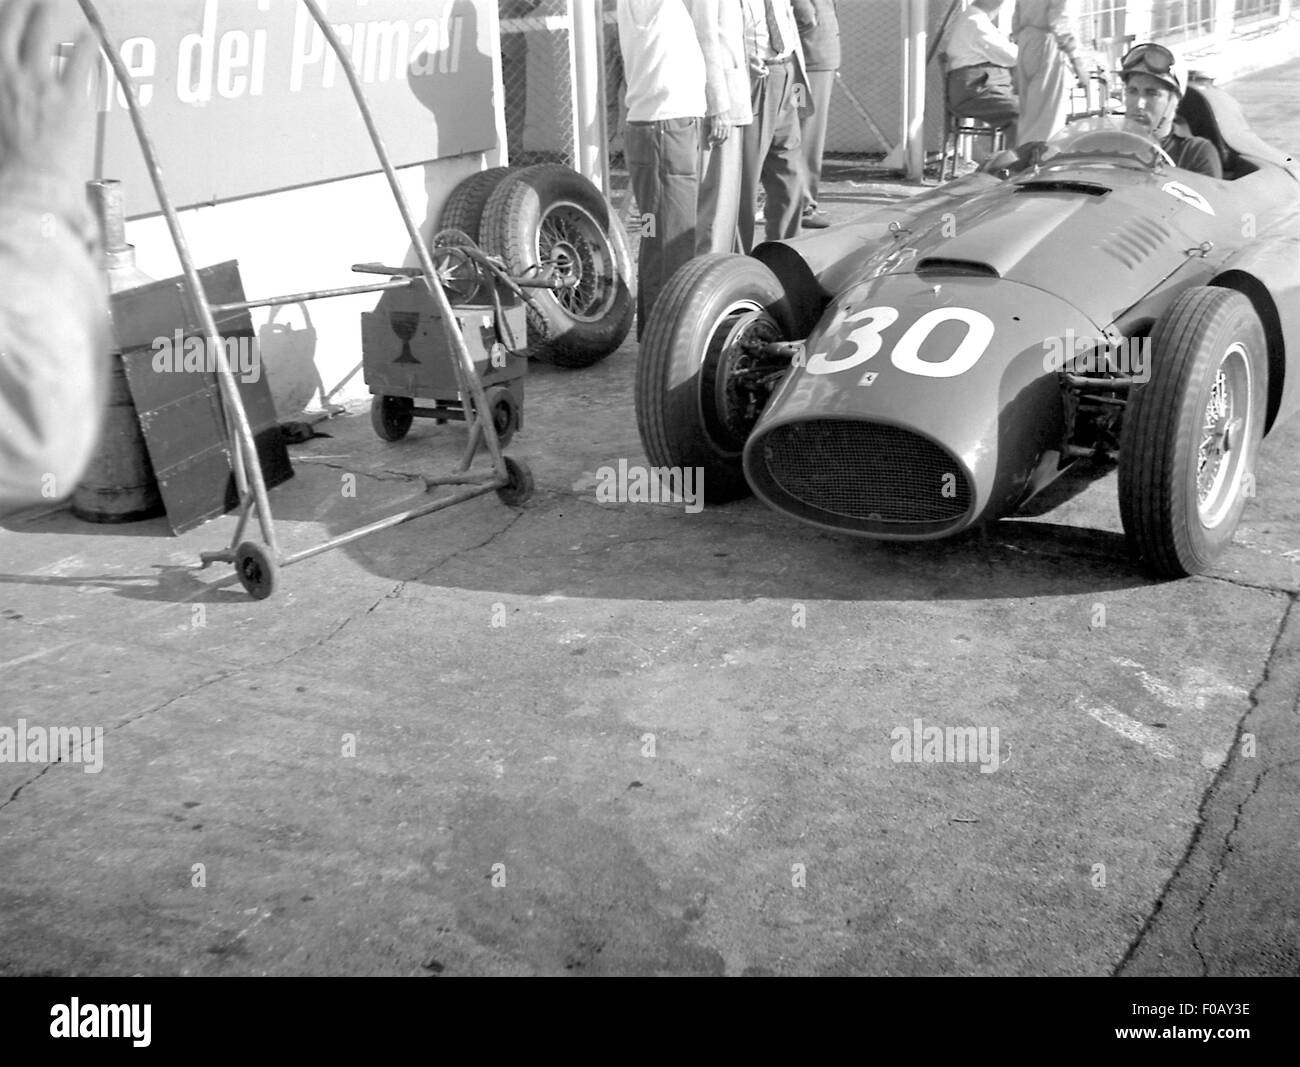 Alfonso de Portago at the 1956 Italian Grand Prix in Monza.